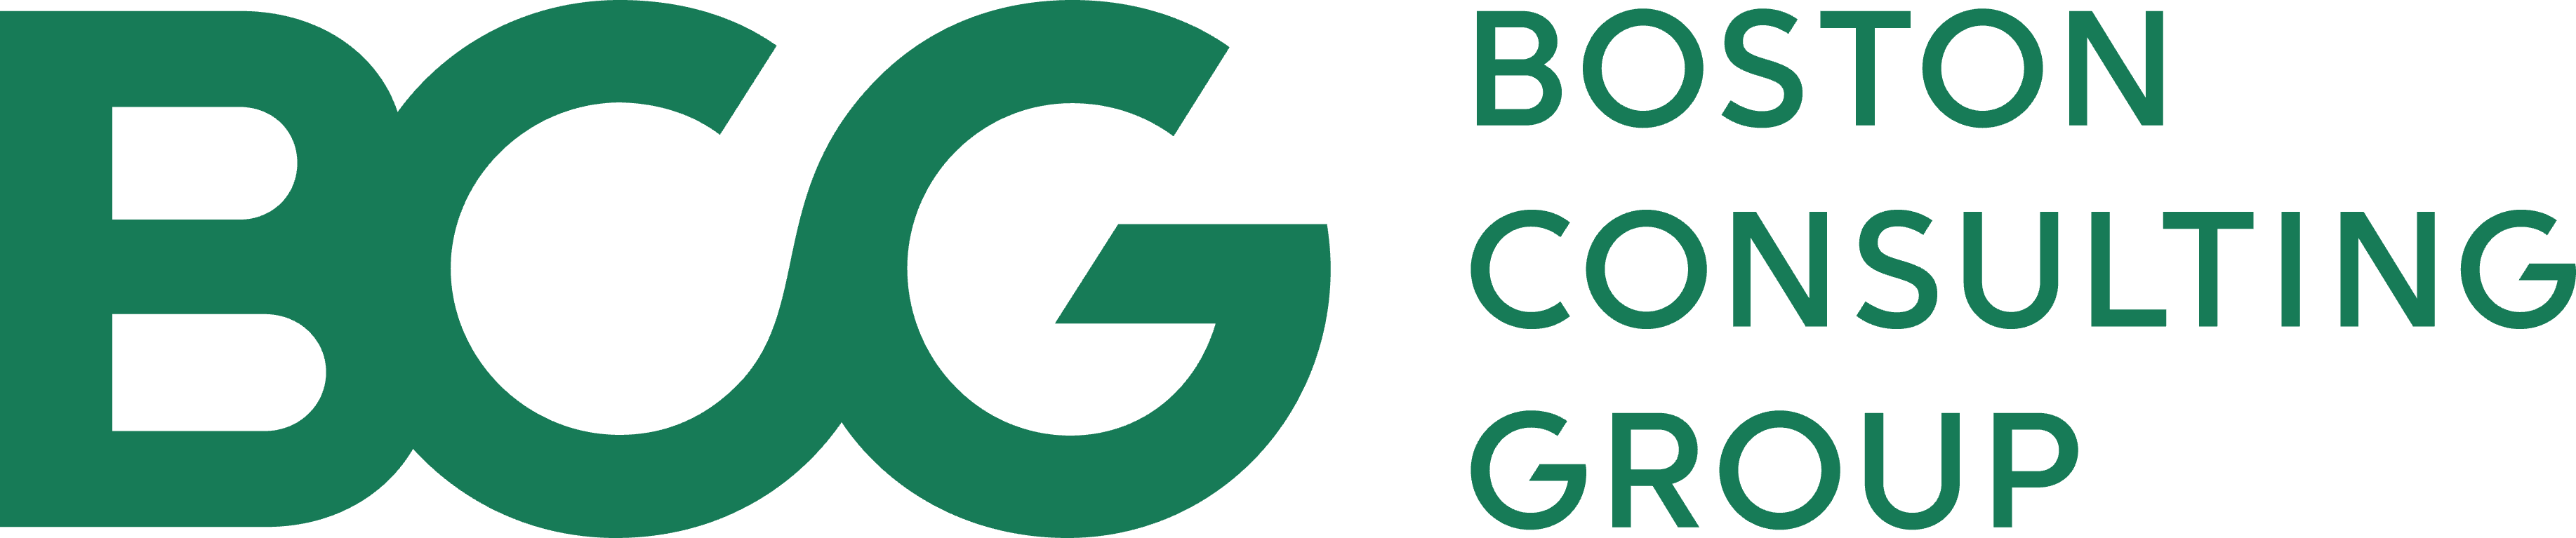 Logo BCG